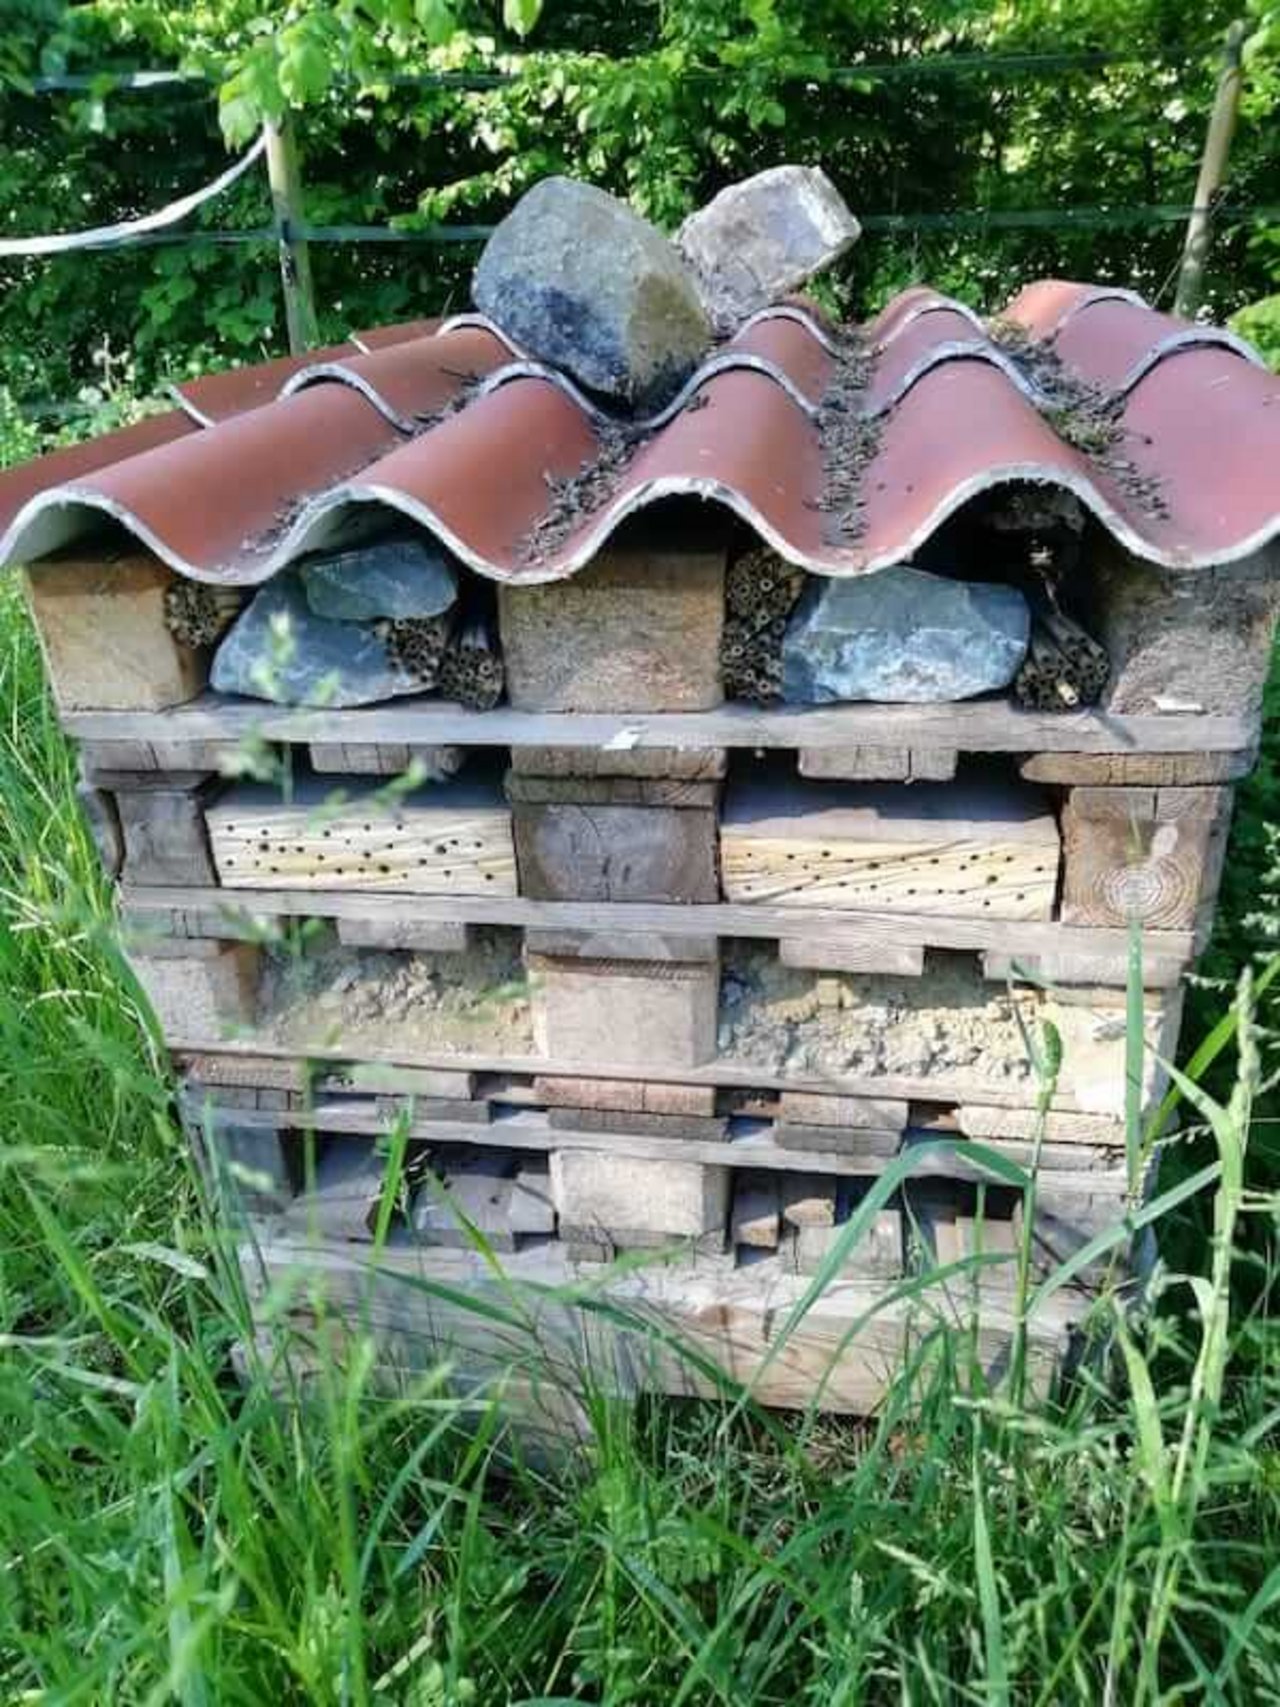 Ein Biodiversitätshotel mit Nisthilfen für Wildbienen und Igelschlupf bietet zusätzlichen Lebensraum. (Bild zVg)